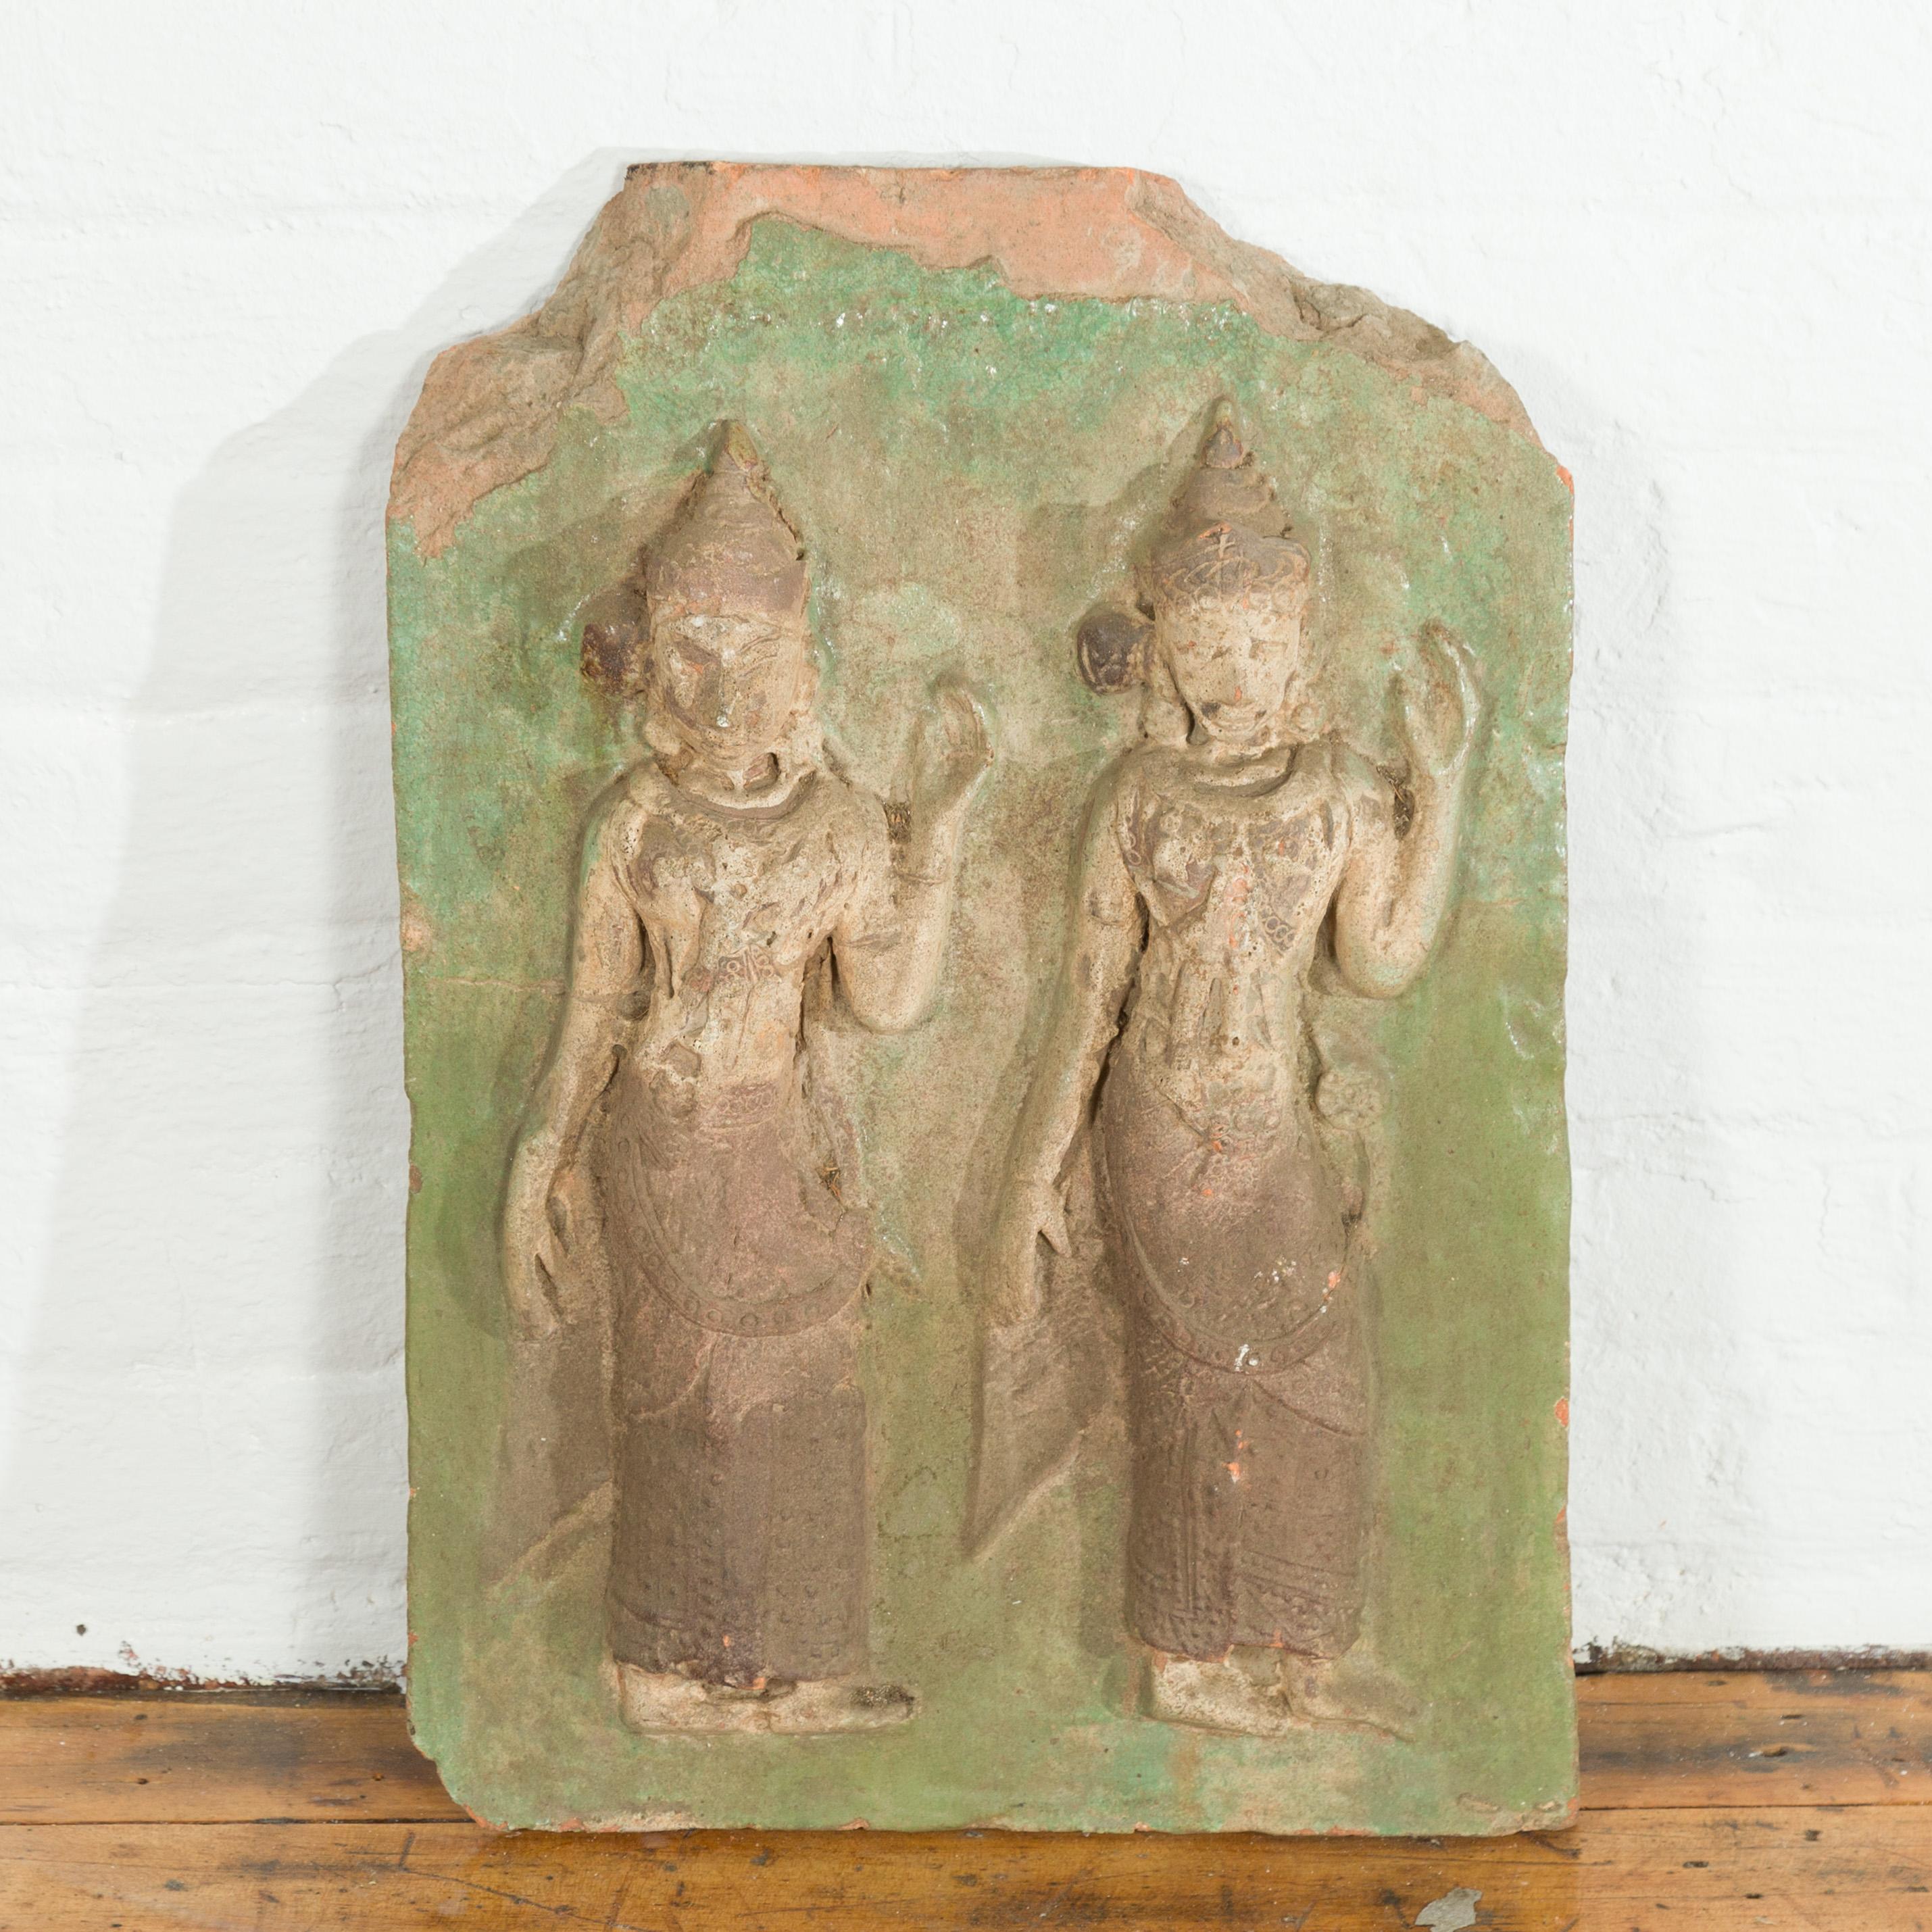 Eine thailändische geschnitzten Stein Tempel Wandtafel, die zwei zeremoniellen Tänzerinnen mit grünen Akzenten. Hand geschnitzt in Thailand, diese antike Wandtafel zeigt eine zwei zeremoniellen Tänzerinnen mit hohen Kopfschmuck und lange